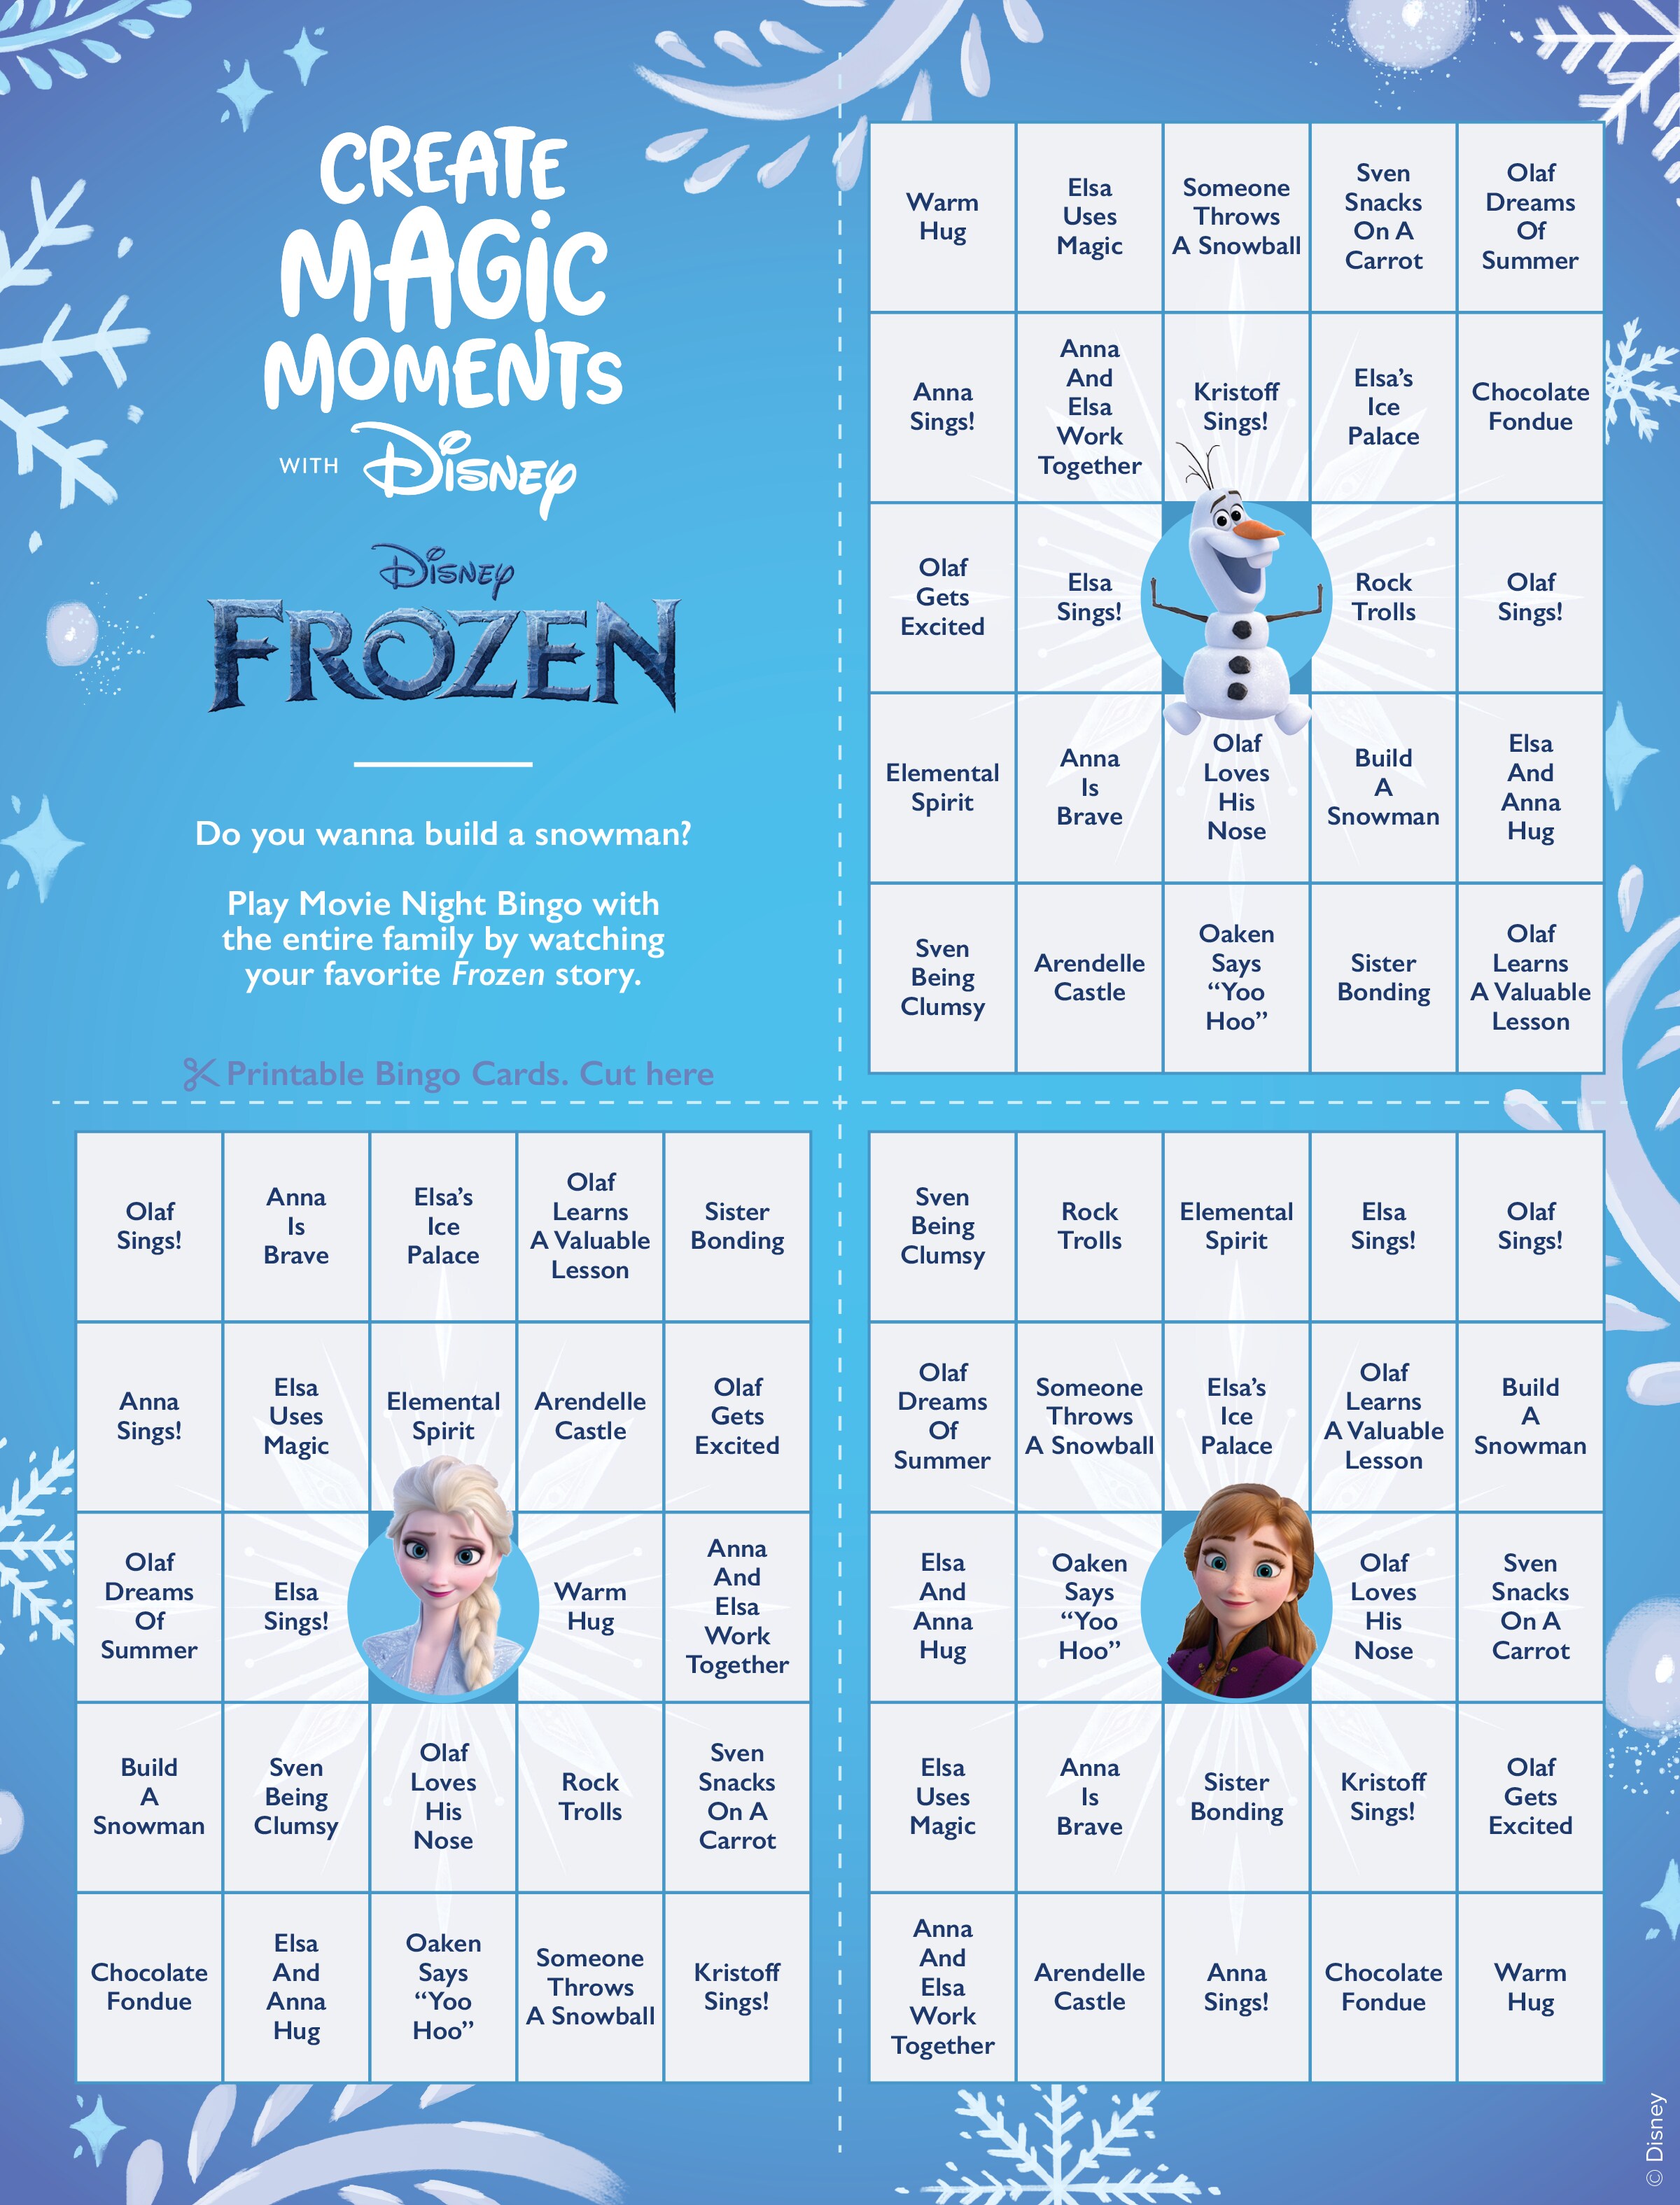 Frozen Bingo